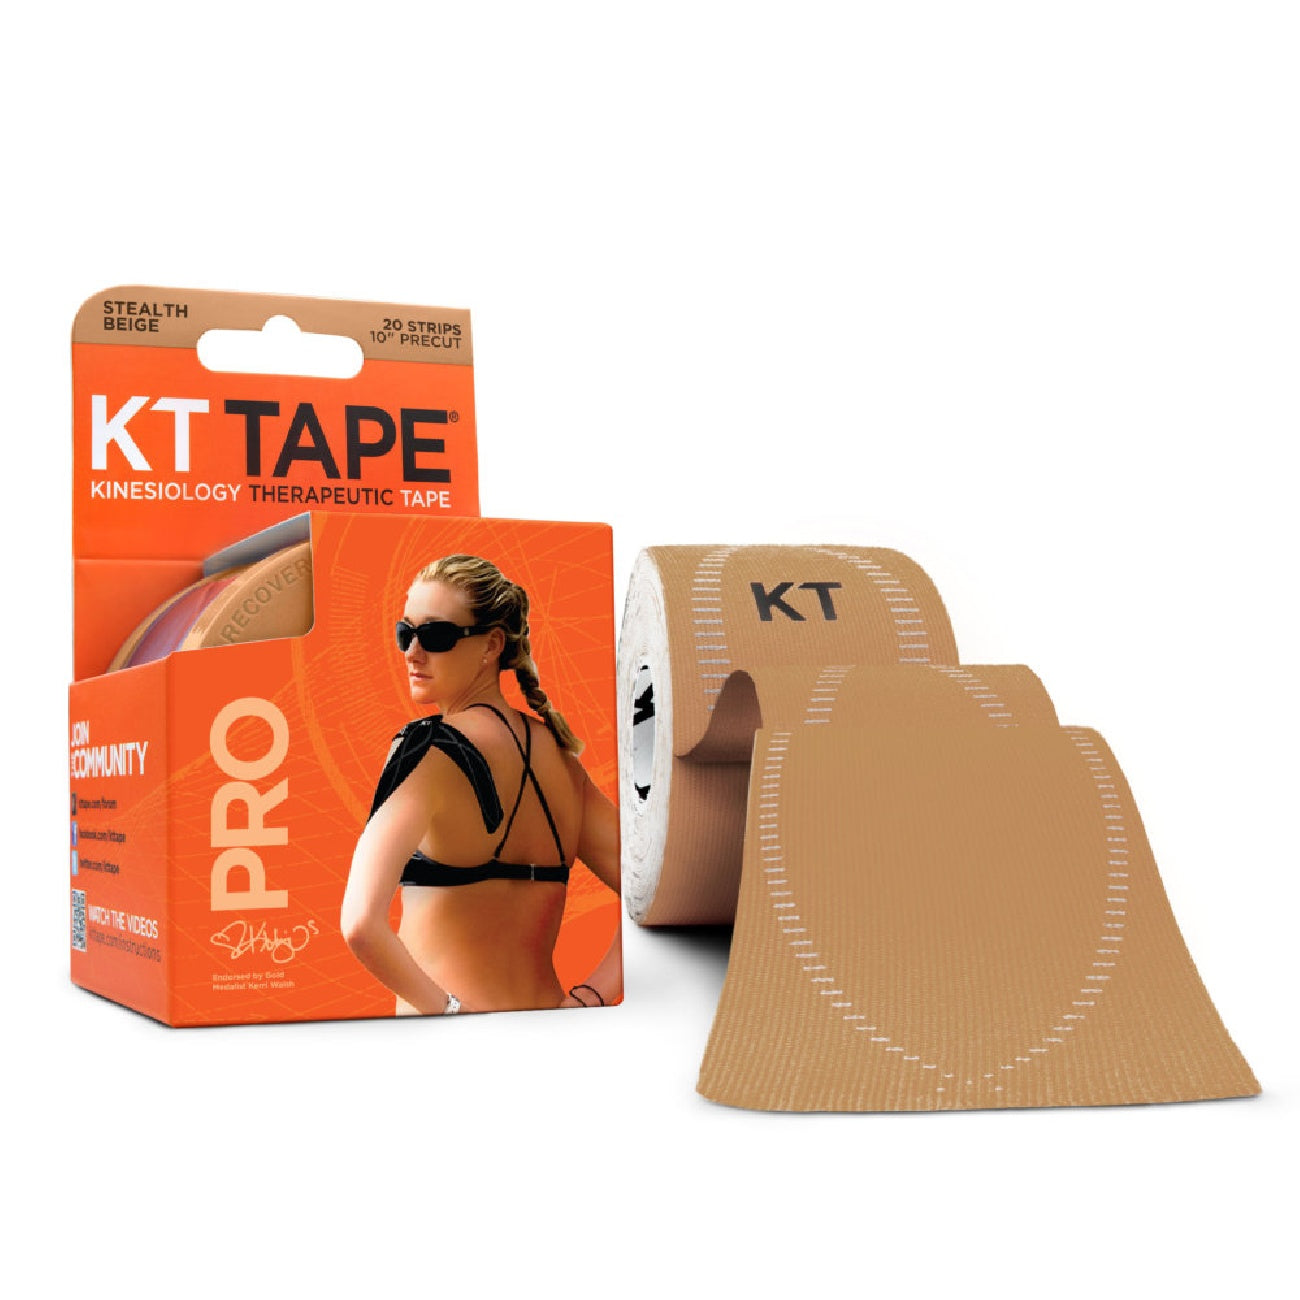 最高級のスーパー 健康・医療用品 ケーティテープ(KT TAPE) キネシオロジーテープ(伸縮性 はく離紙付) KTPR150 SBEPRO150 JUMBO ステルスベージ